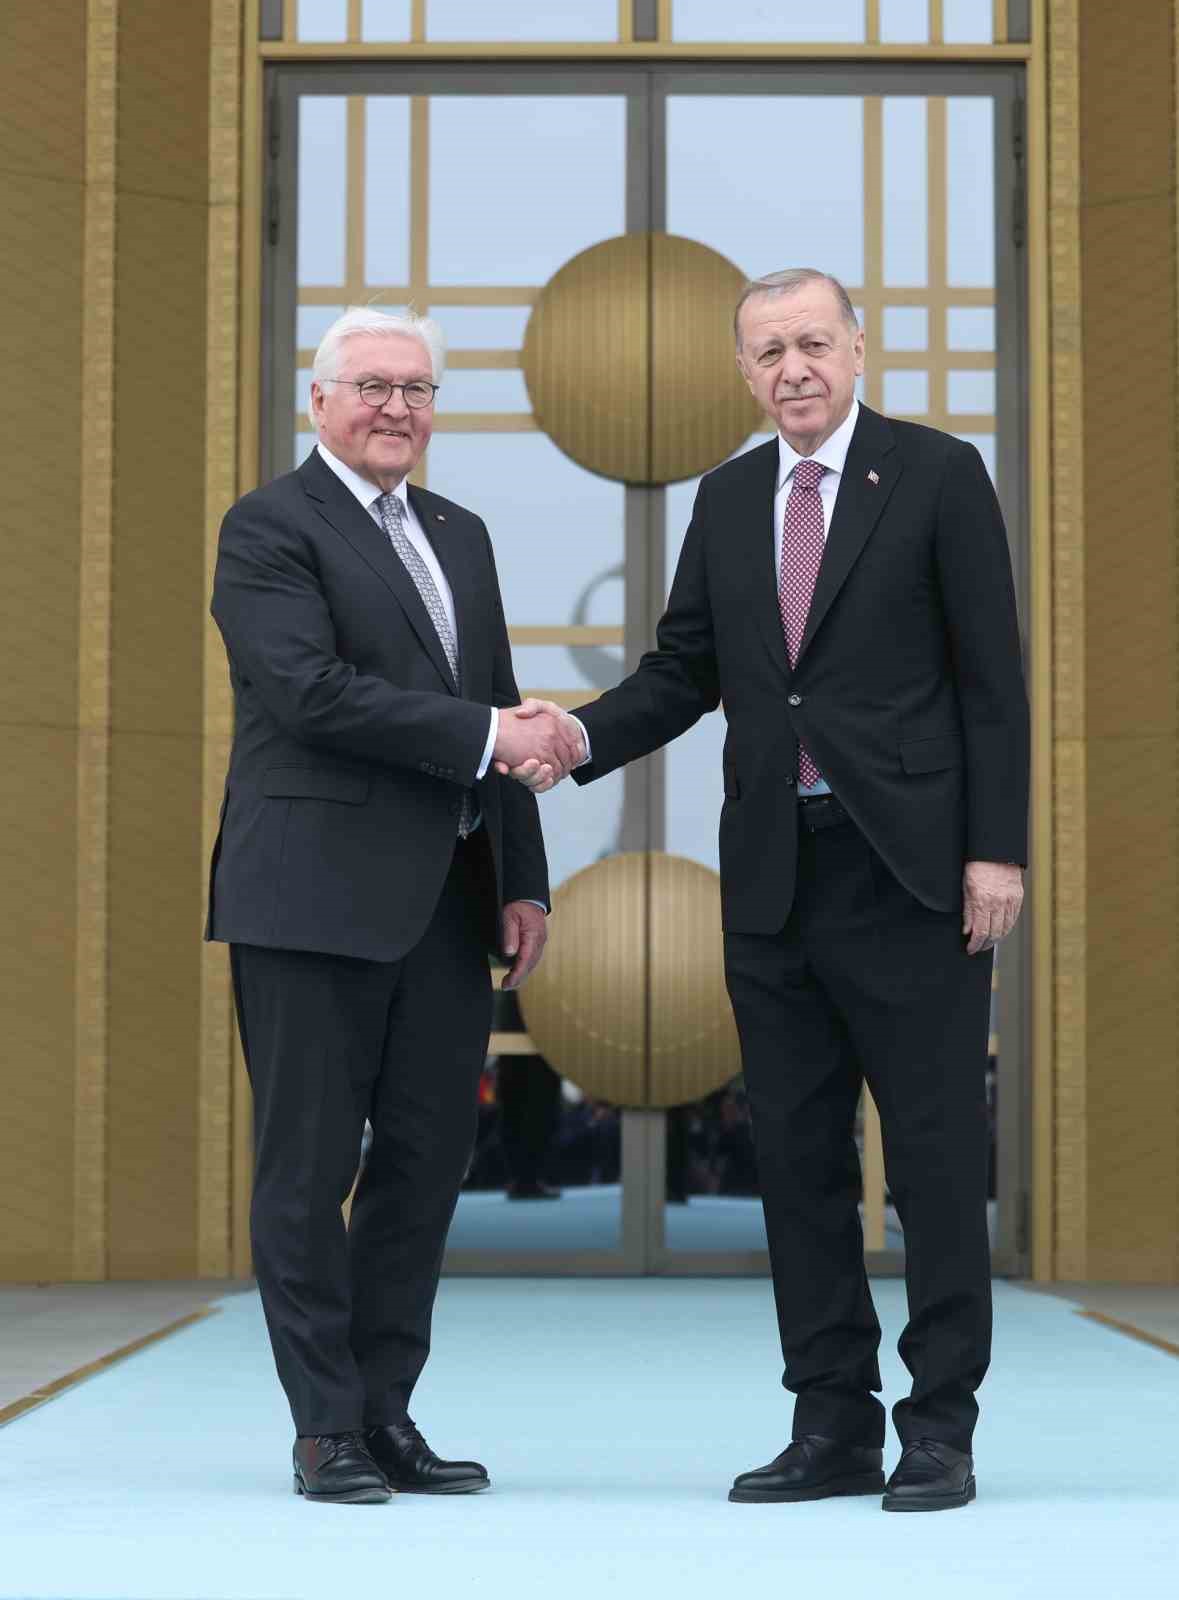 Cumhurbaşkanı Erdoğan, Almanya Cumhurbaşkanı Steinmeier’i resmi törenle karşıladı
